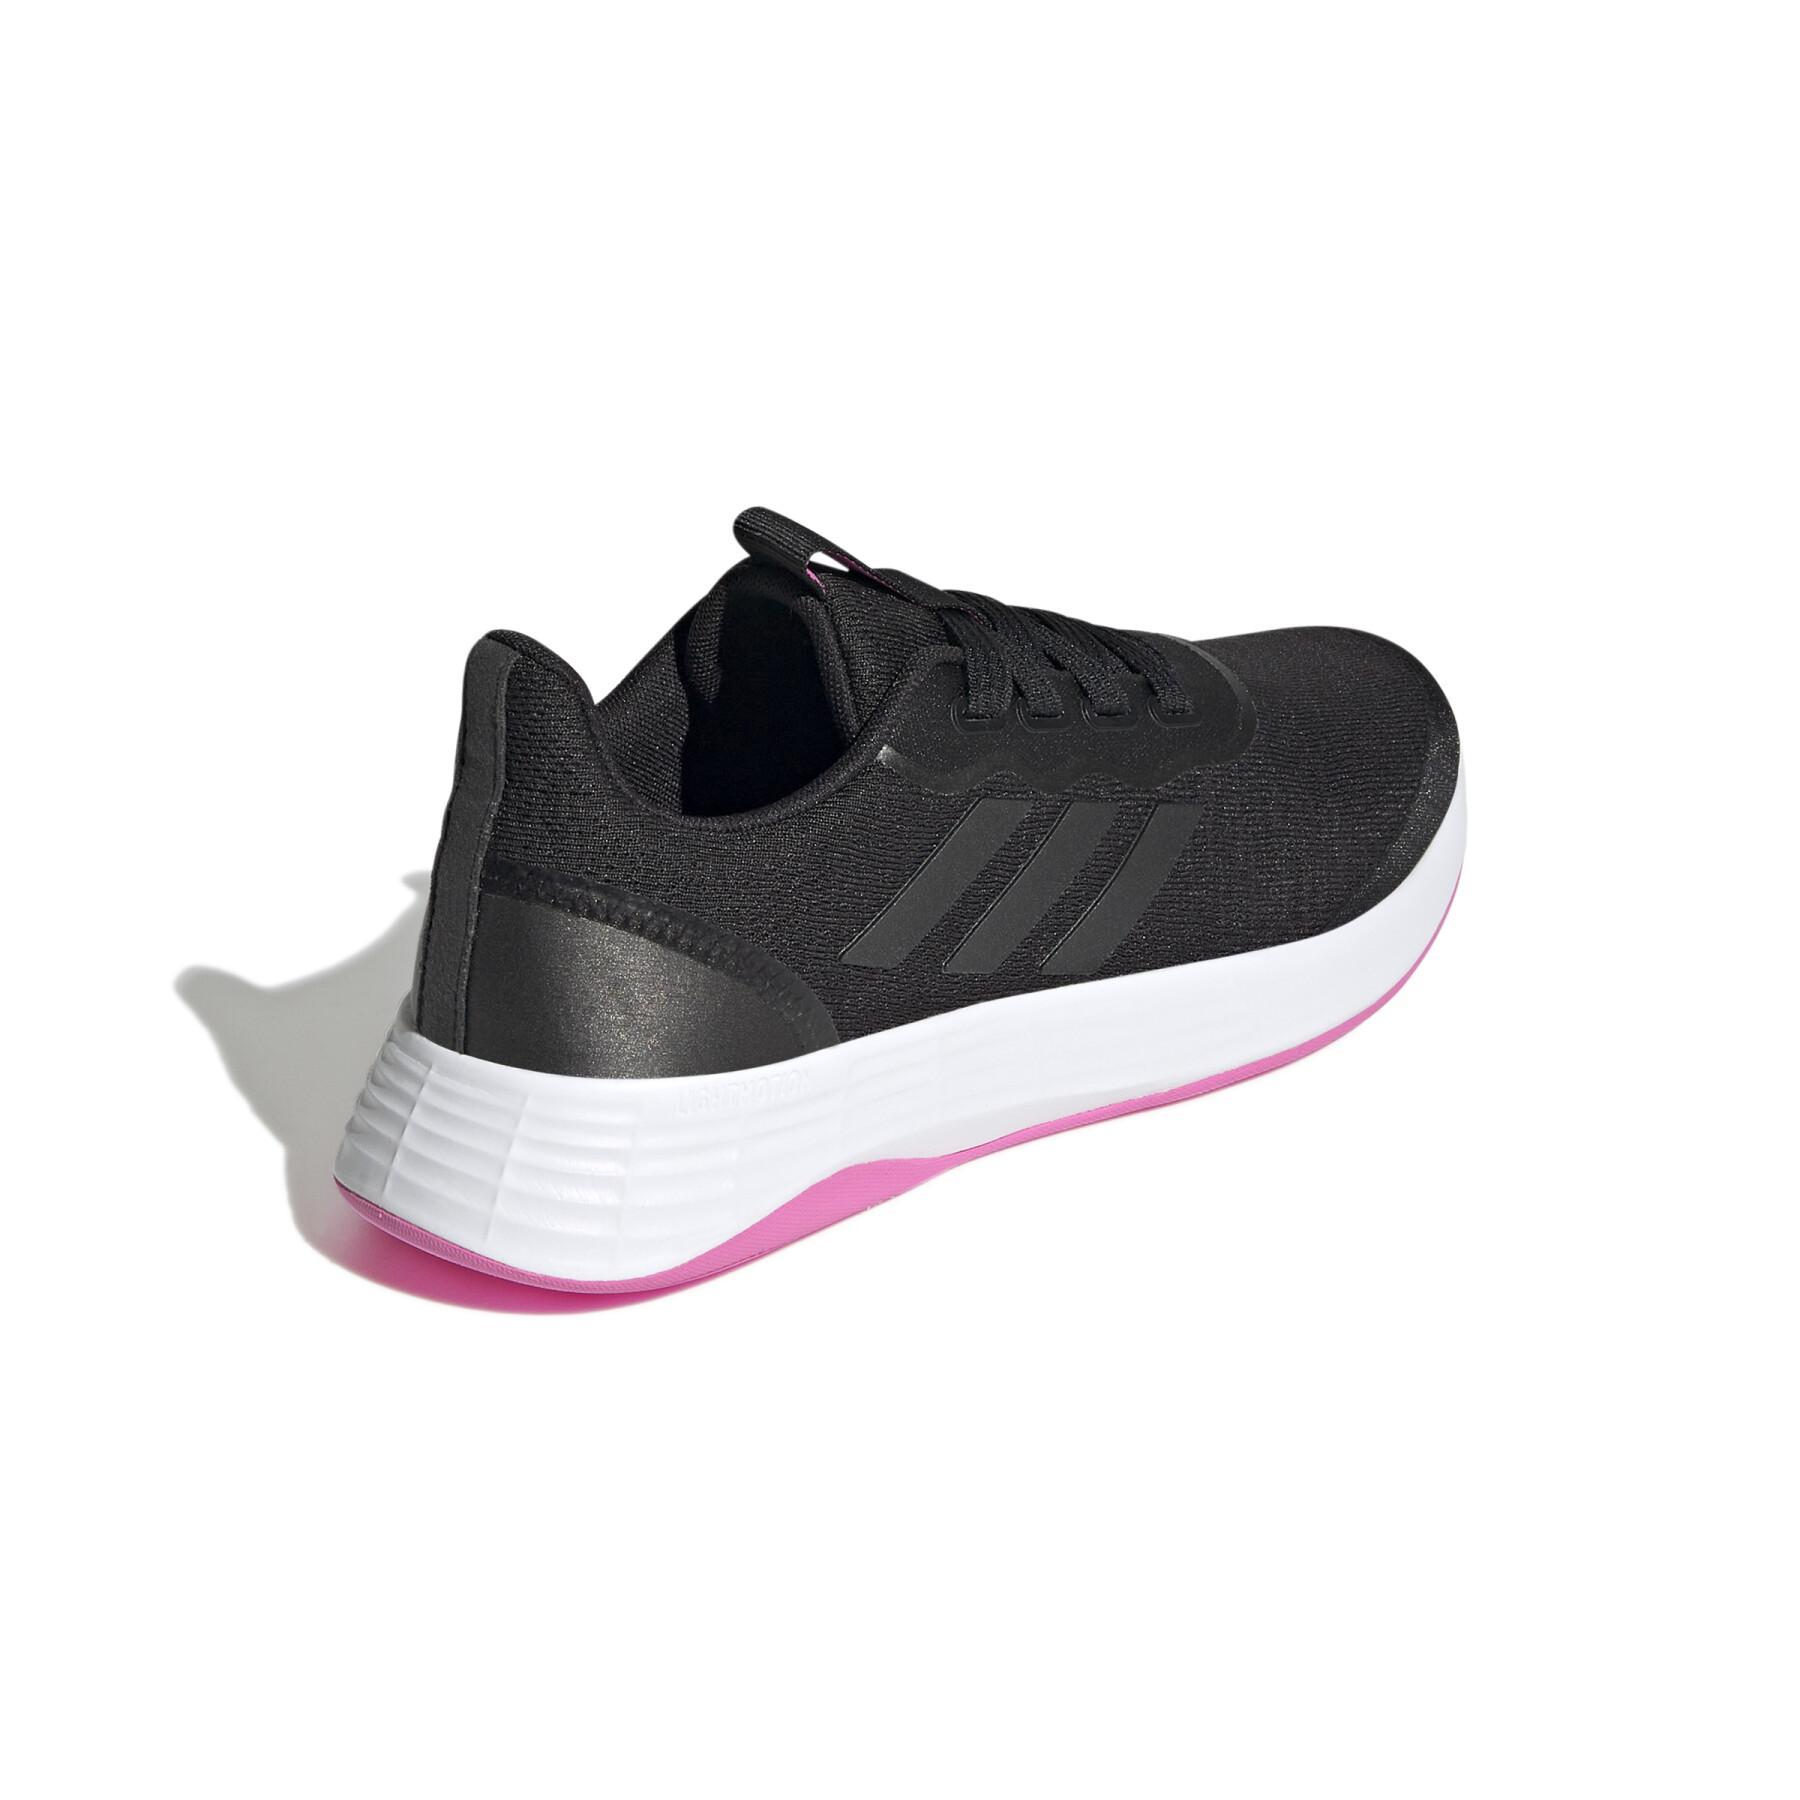 Chaussures de running femme adidas QT Racer Sport